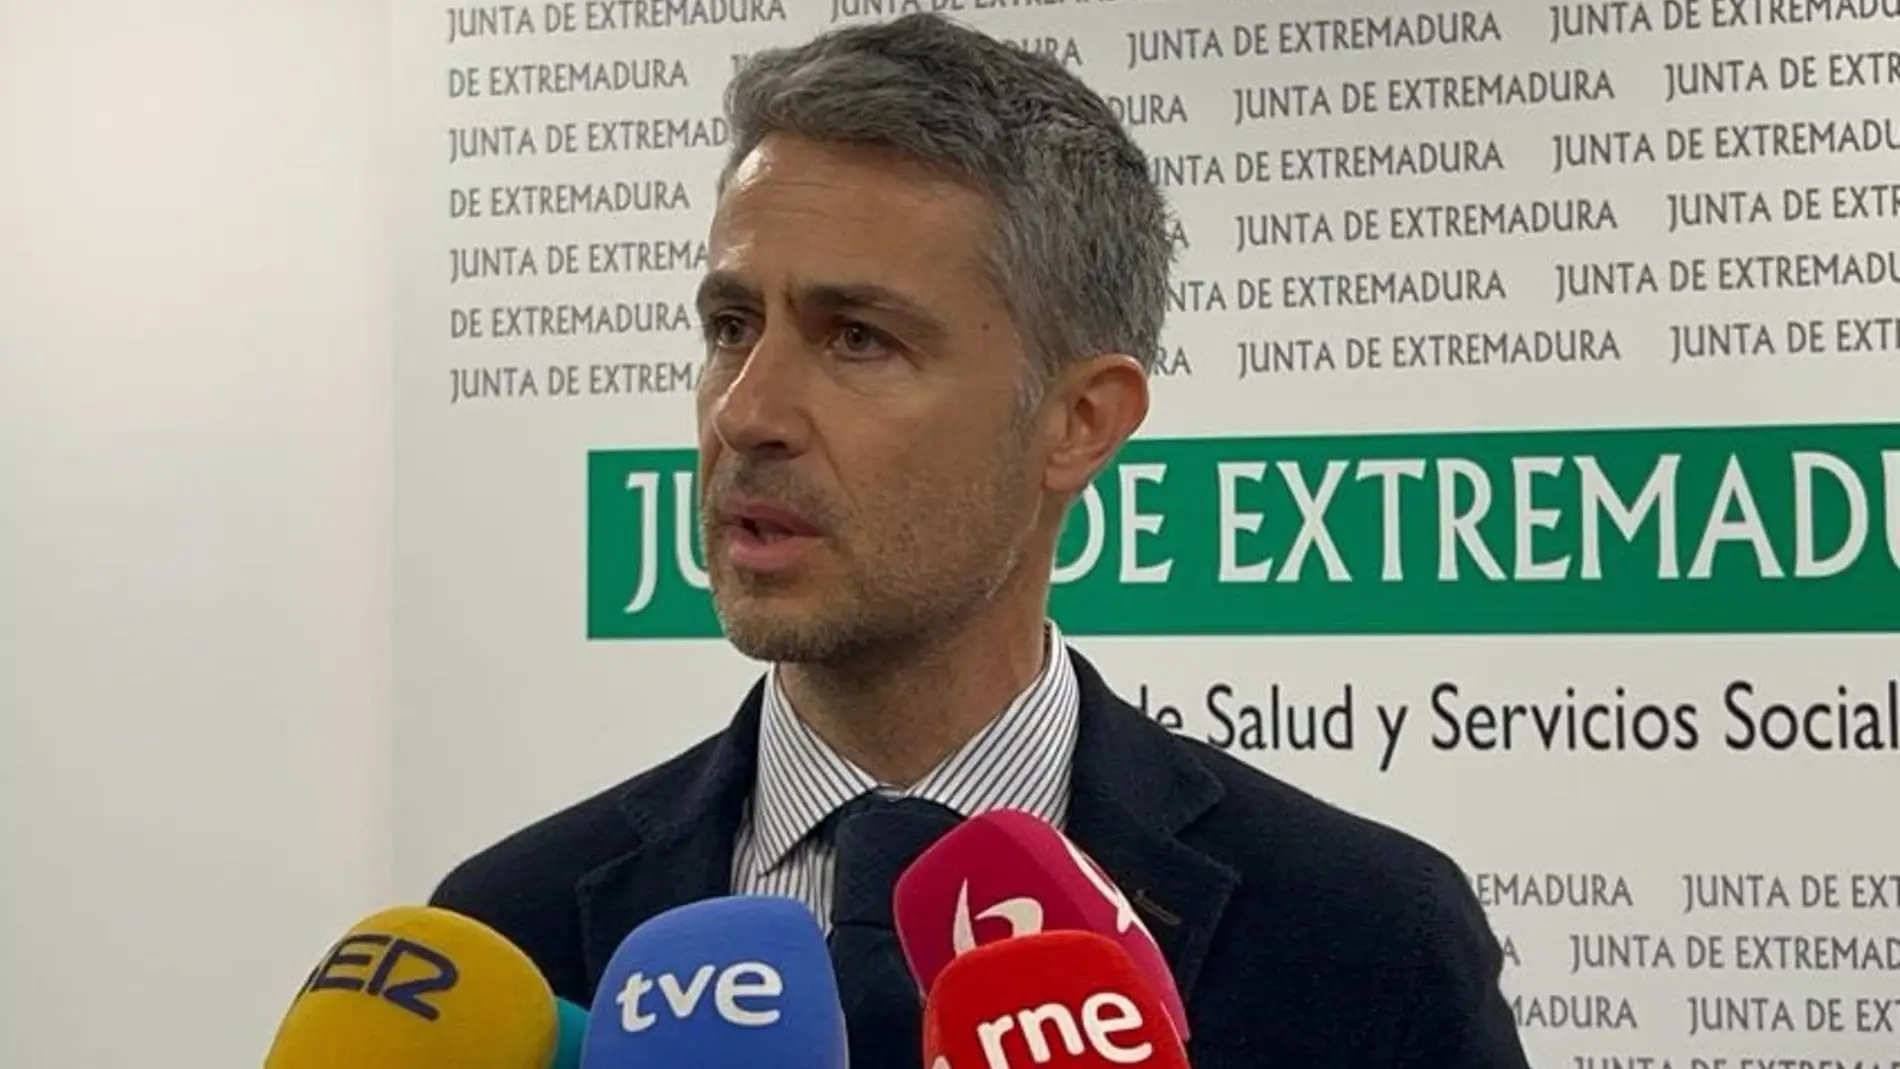 Desciende por primera vez en enero la tasa de incidencia de infecciones respiratorias agudas en Extremadura y las hospitalizaciones